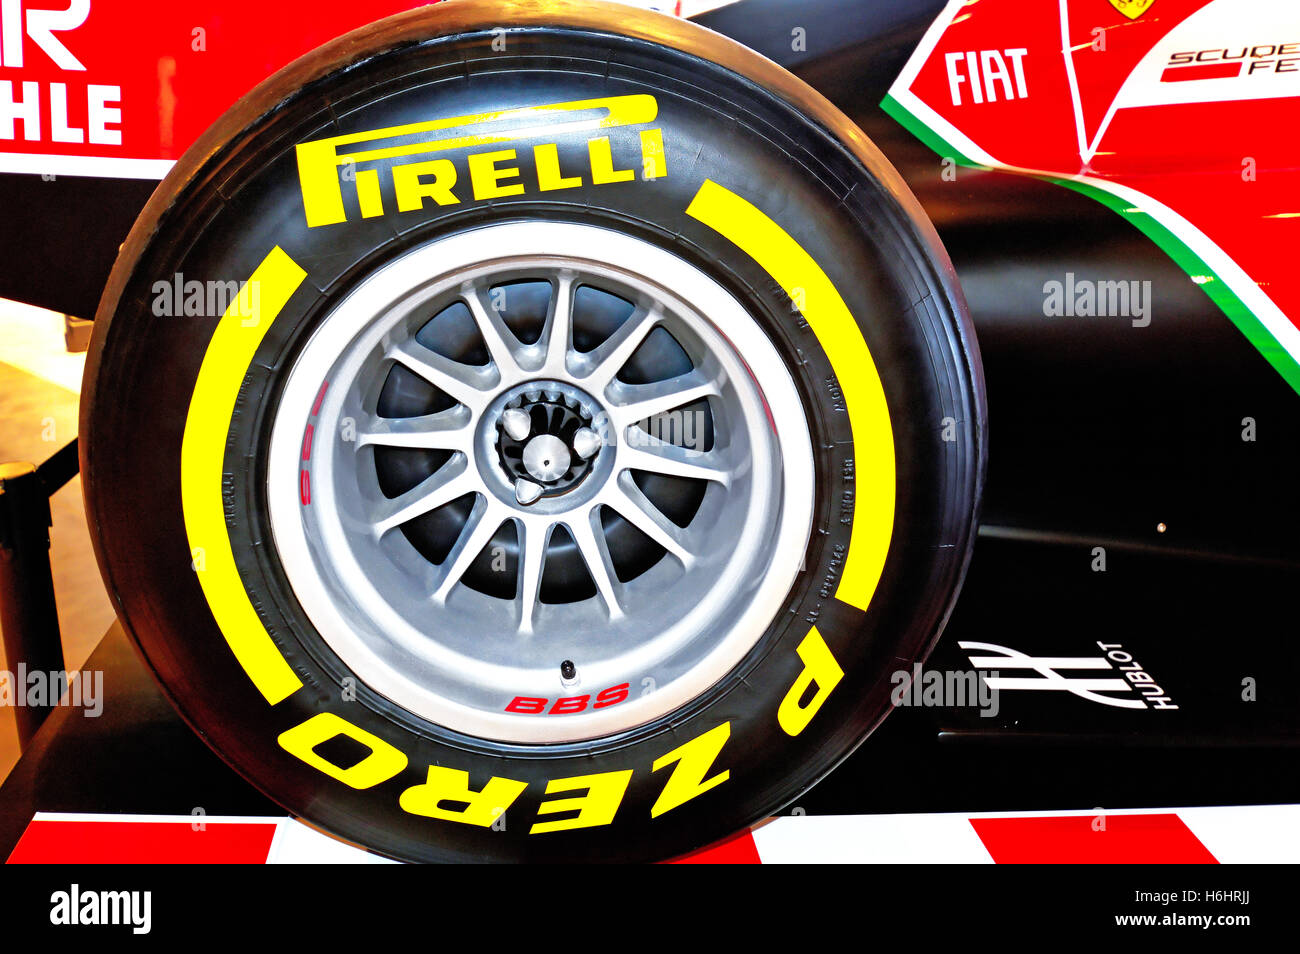 Pirelli Pzero Formula 1 racing slik, pneu de voiture jaune noir rouge Photo  Stock - Alamy